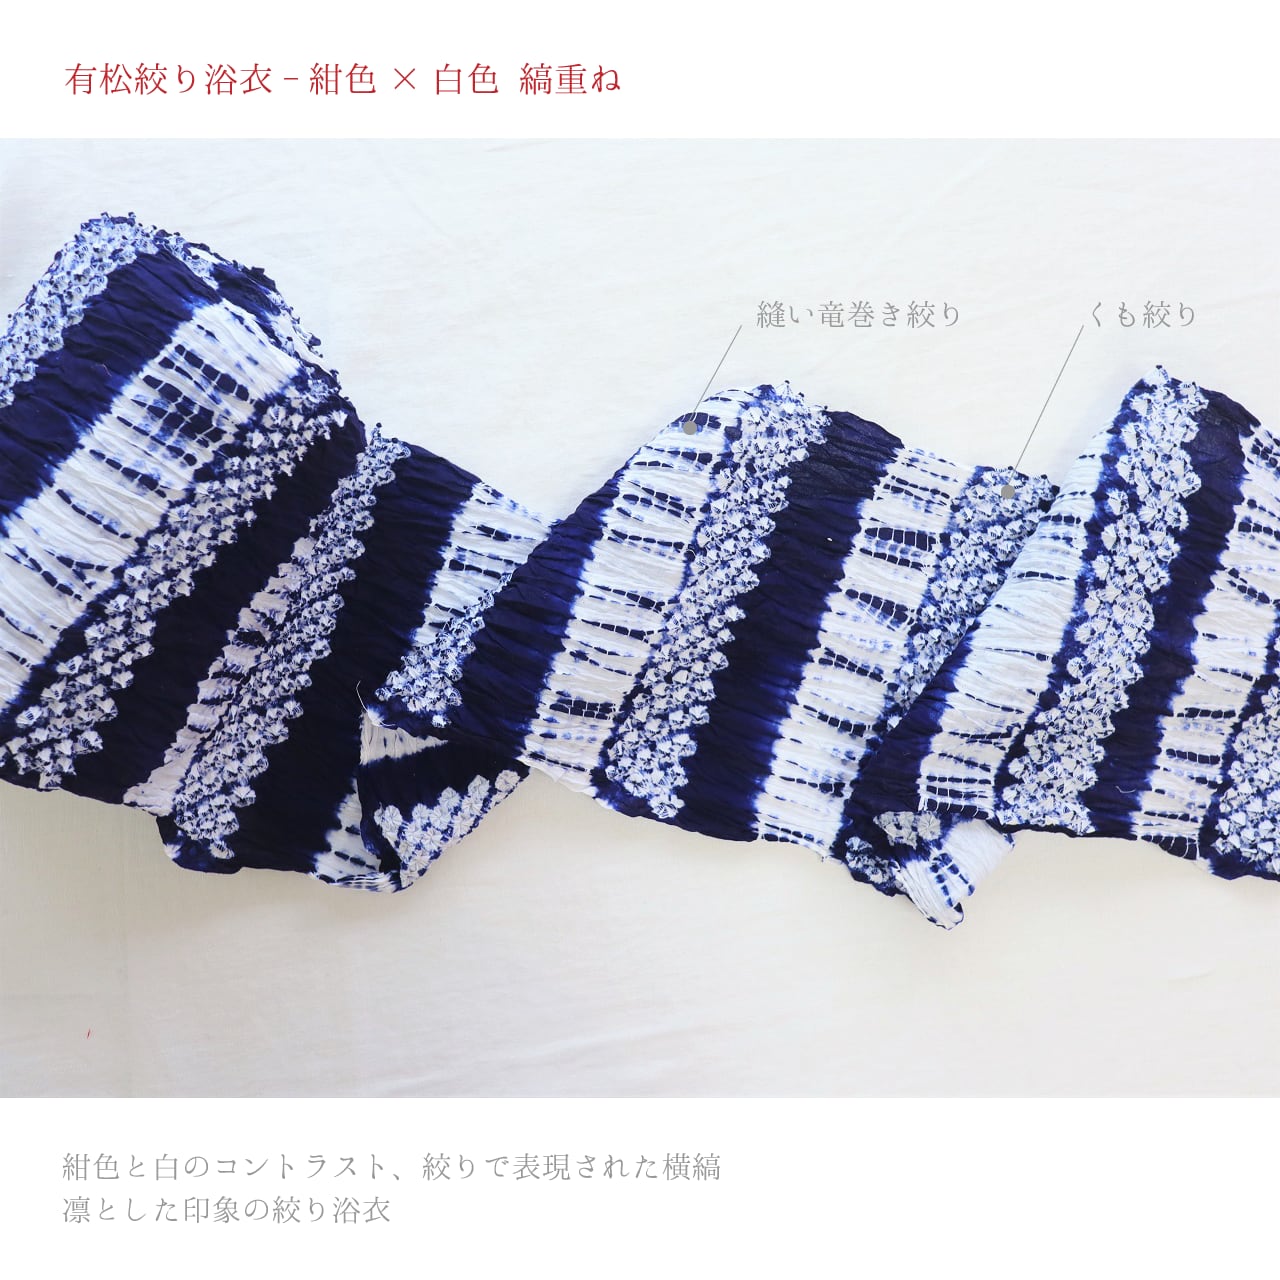 有松絞り浴衣】【夏着物】【反物】紺色×白色 縞重ね | 静京 オンライン 